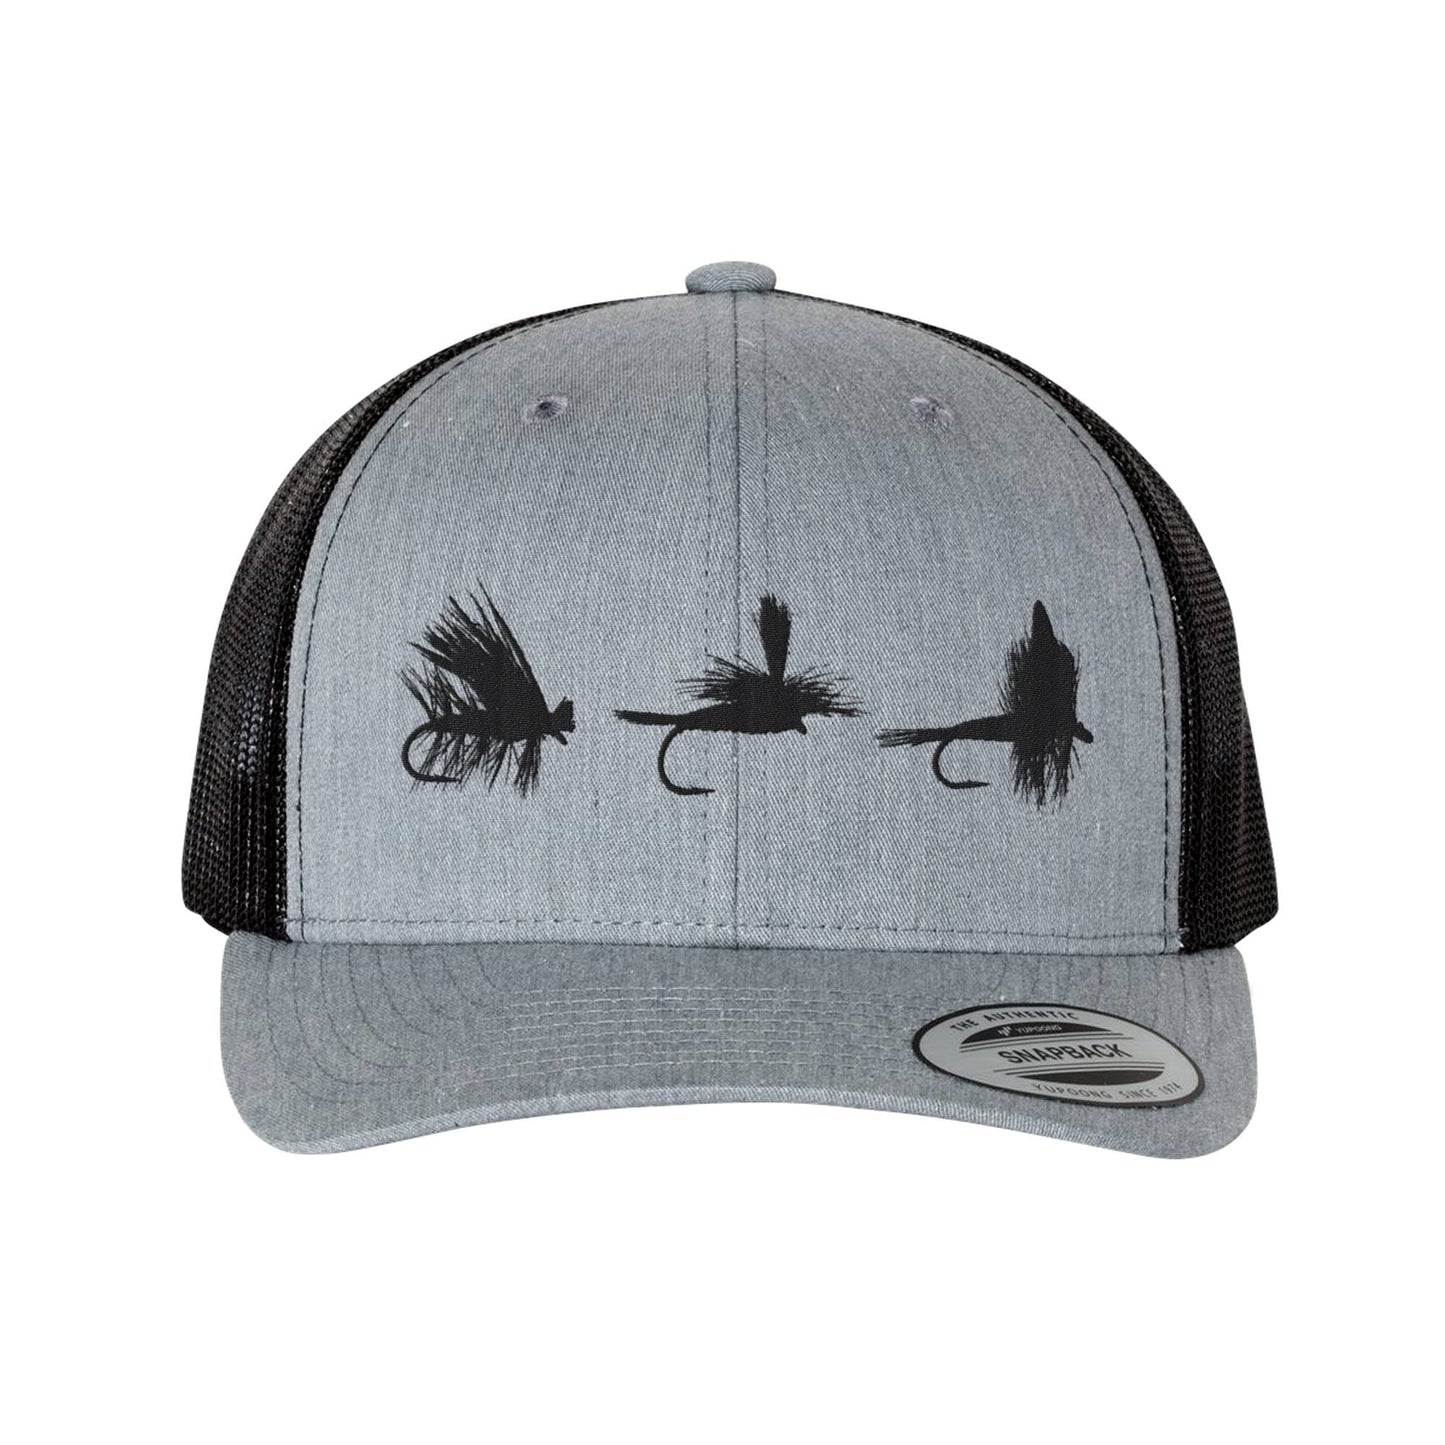 Fly Fishing Trucker Hat